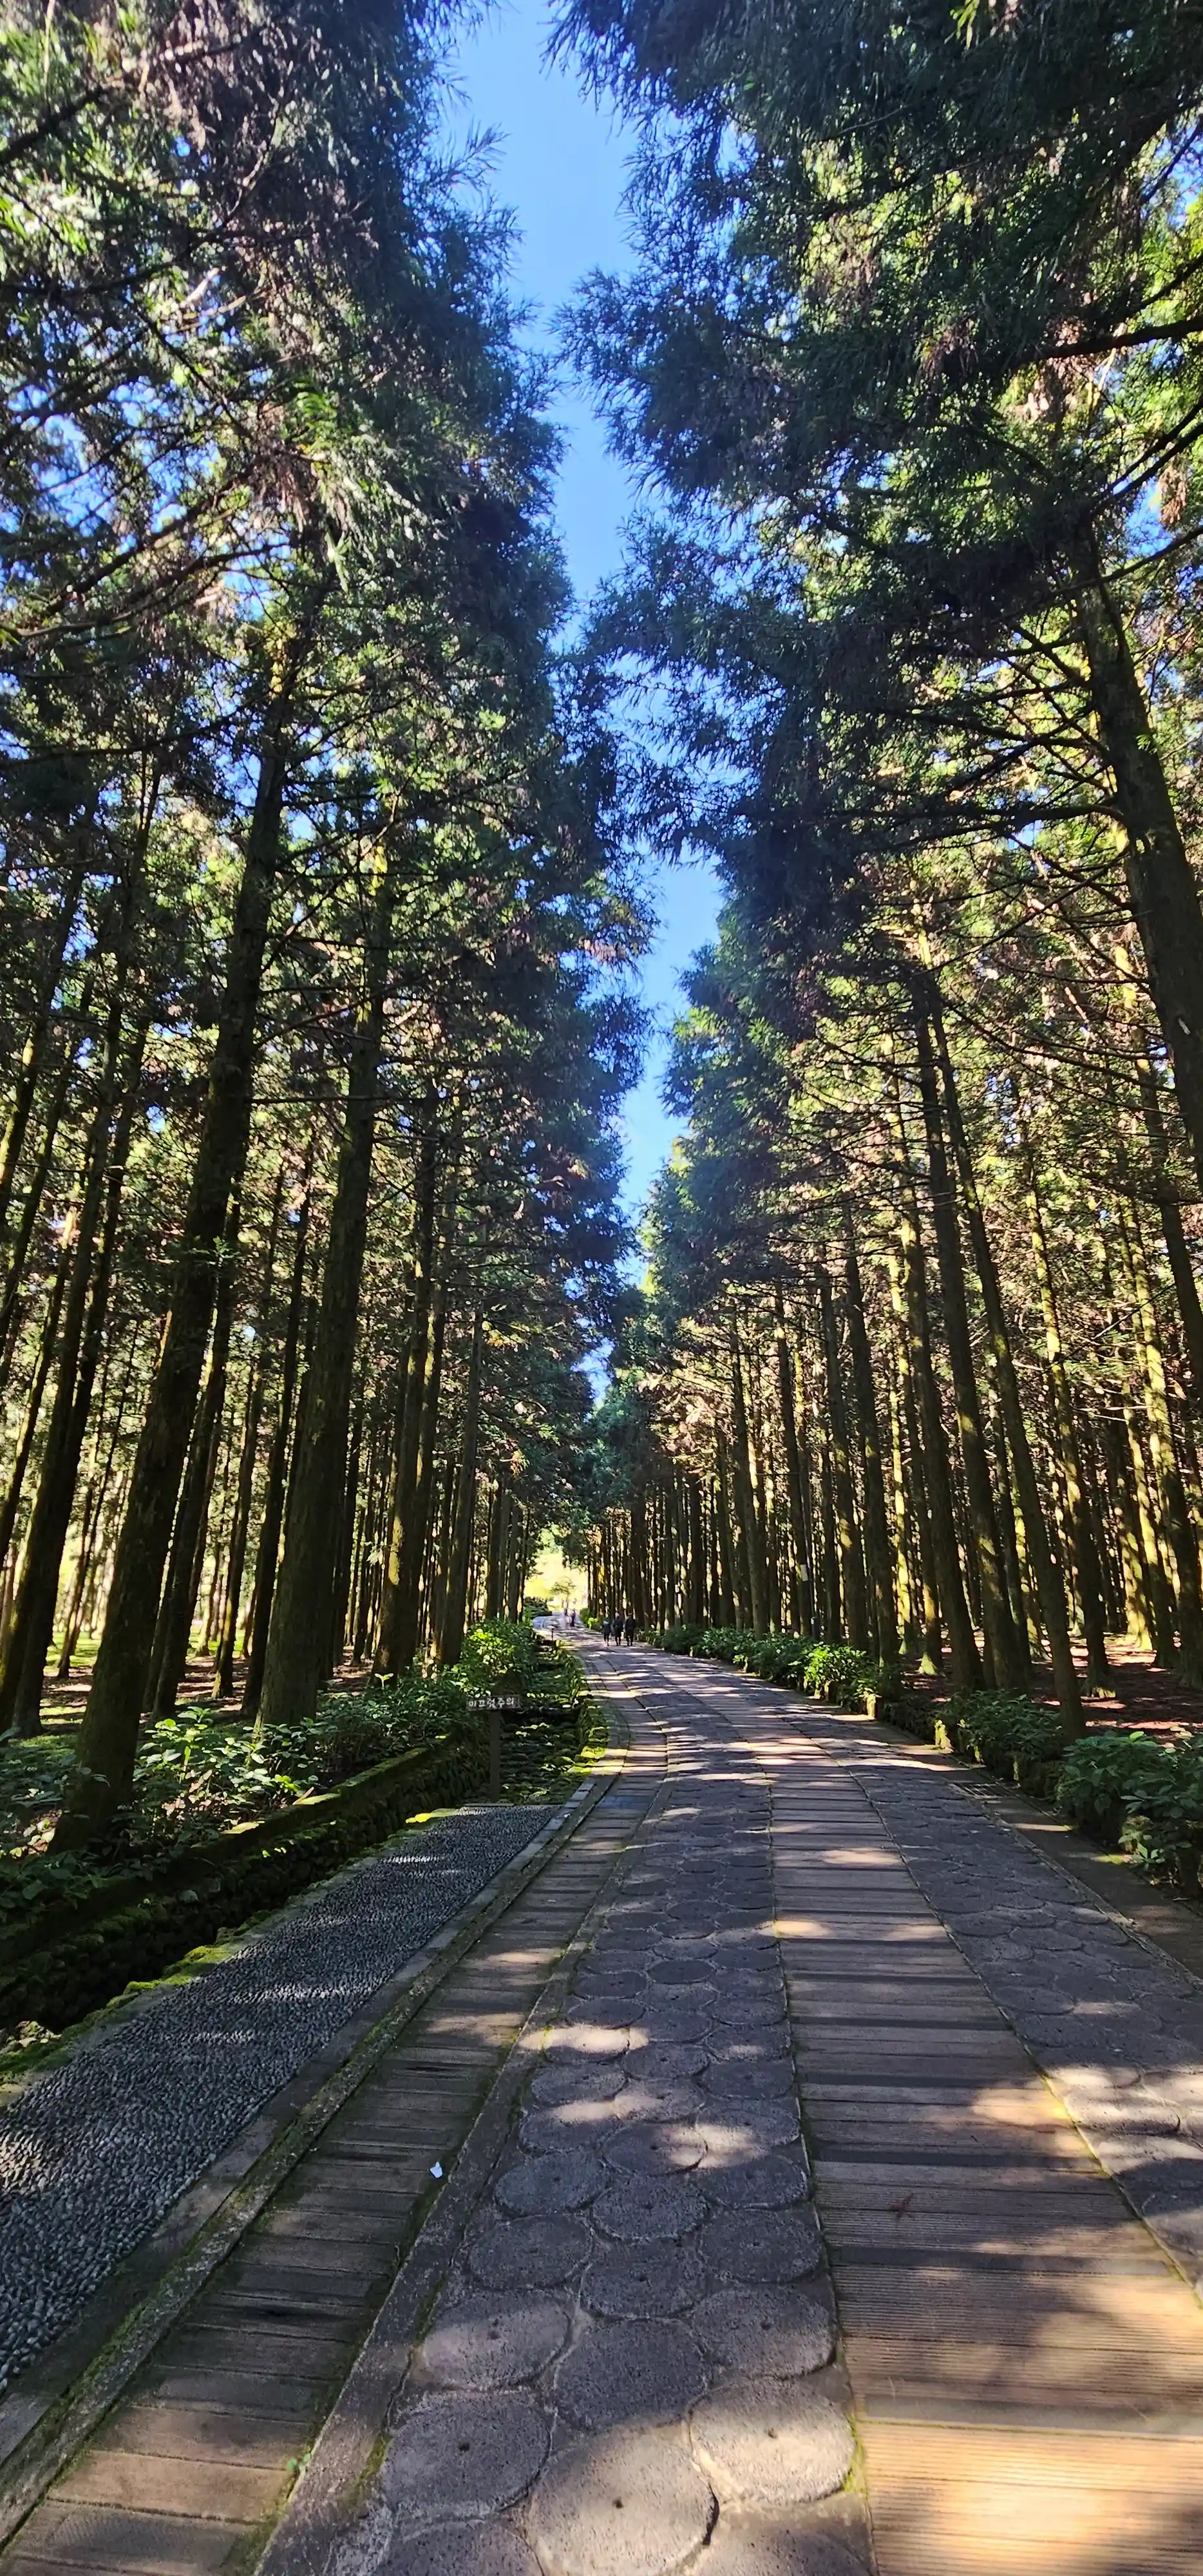 잘 정비 된 편백나무 숲 길 산책로.